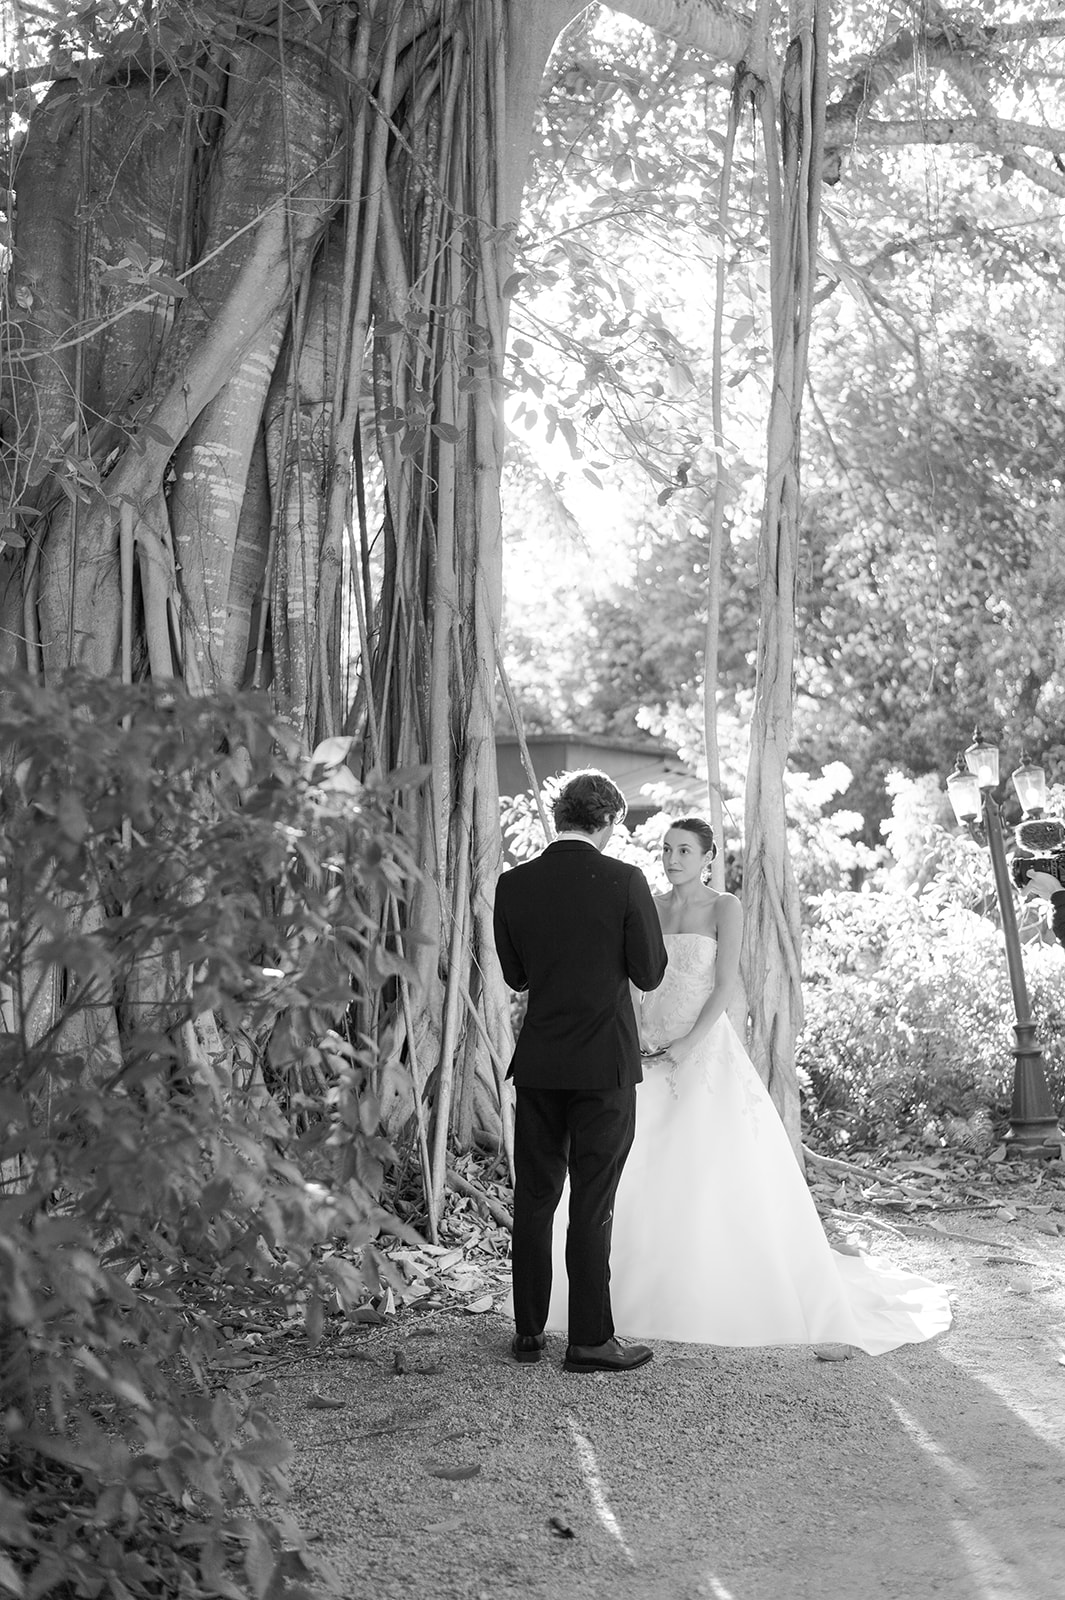 Miami Florida wedding photographer with a creative eye
